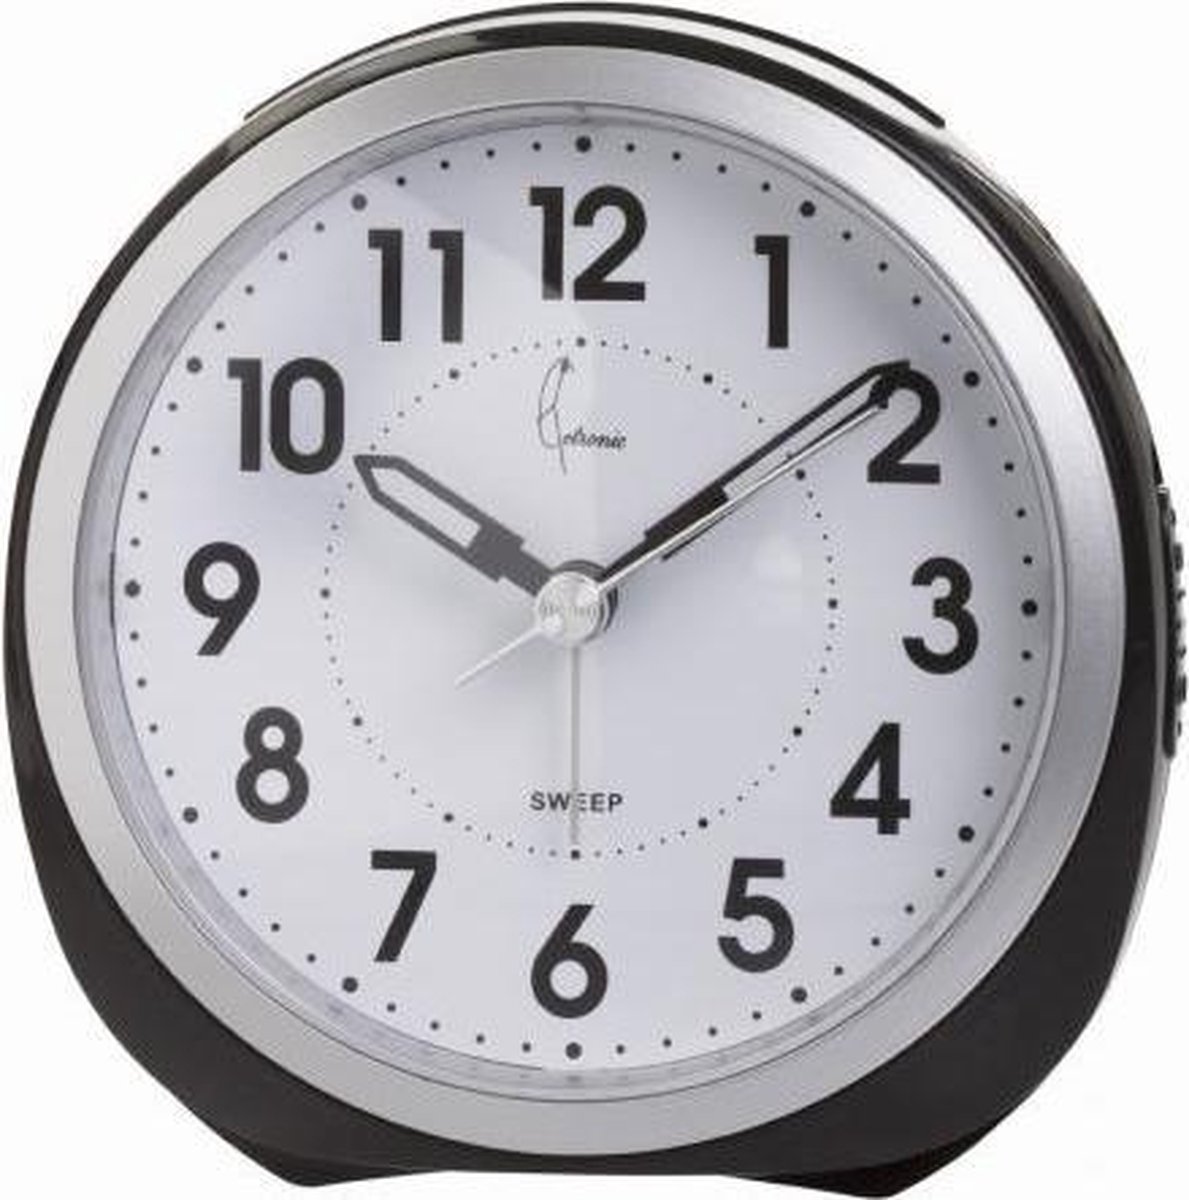 Cetronic RD872SP S - Wekker - Analoog - Stil uurwerk - Zwart - Zilverkleurig